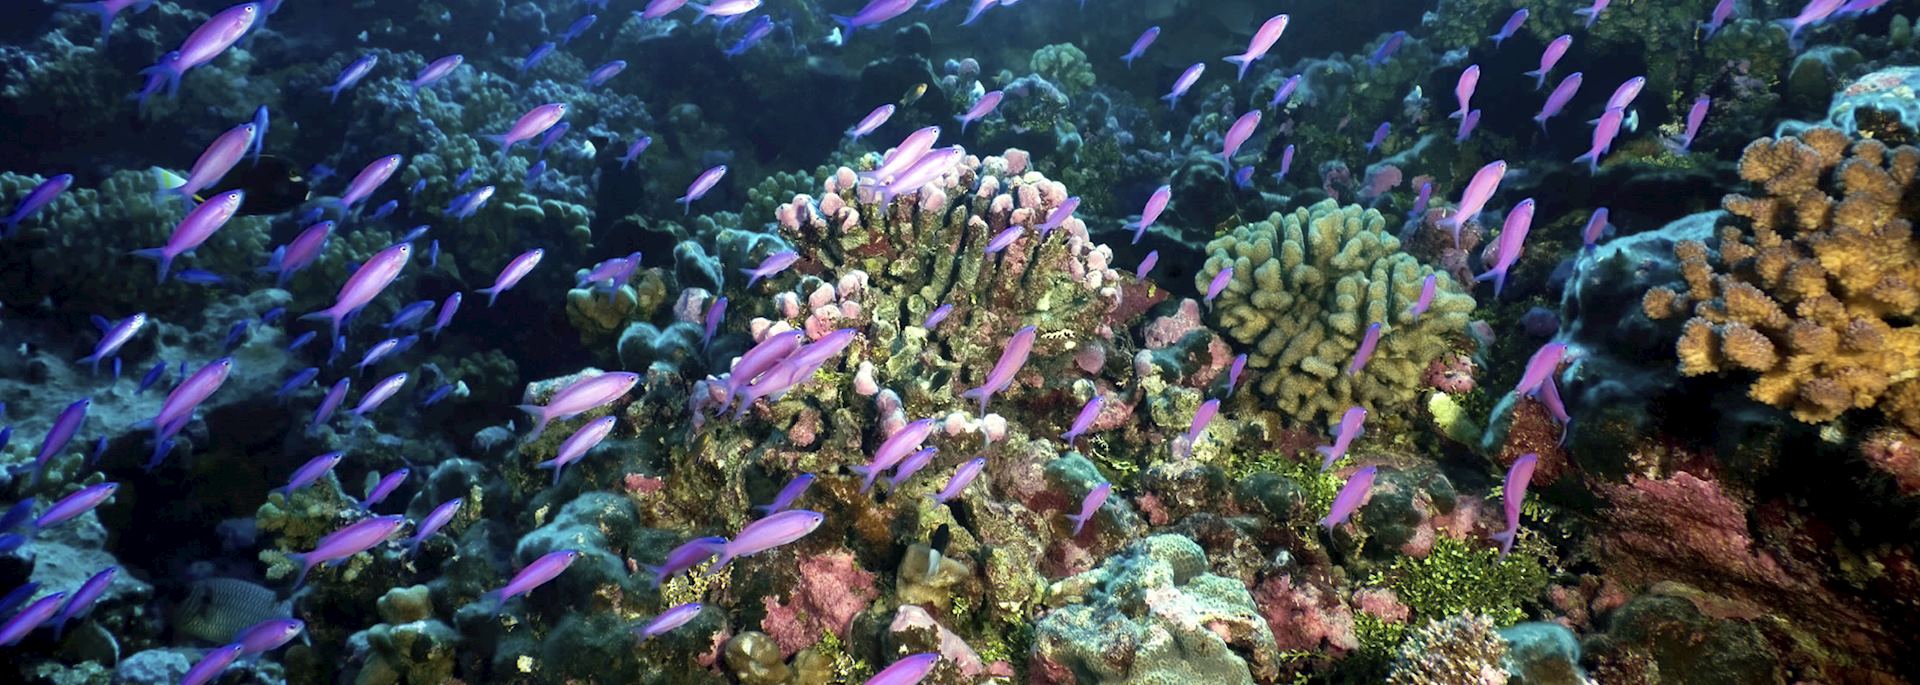 Purple Anthias fish, French Polynesia